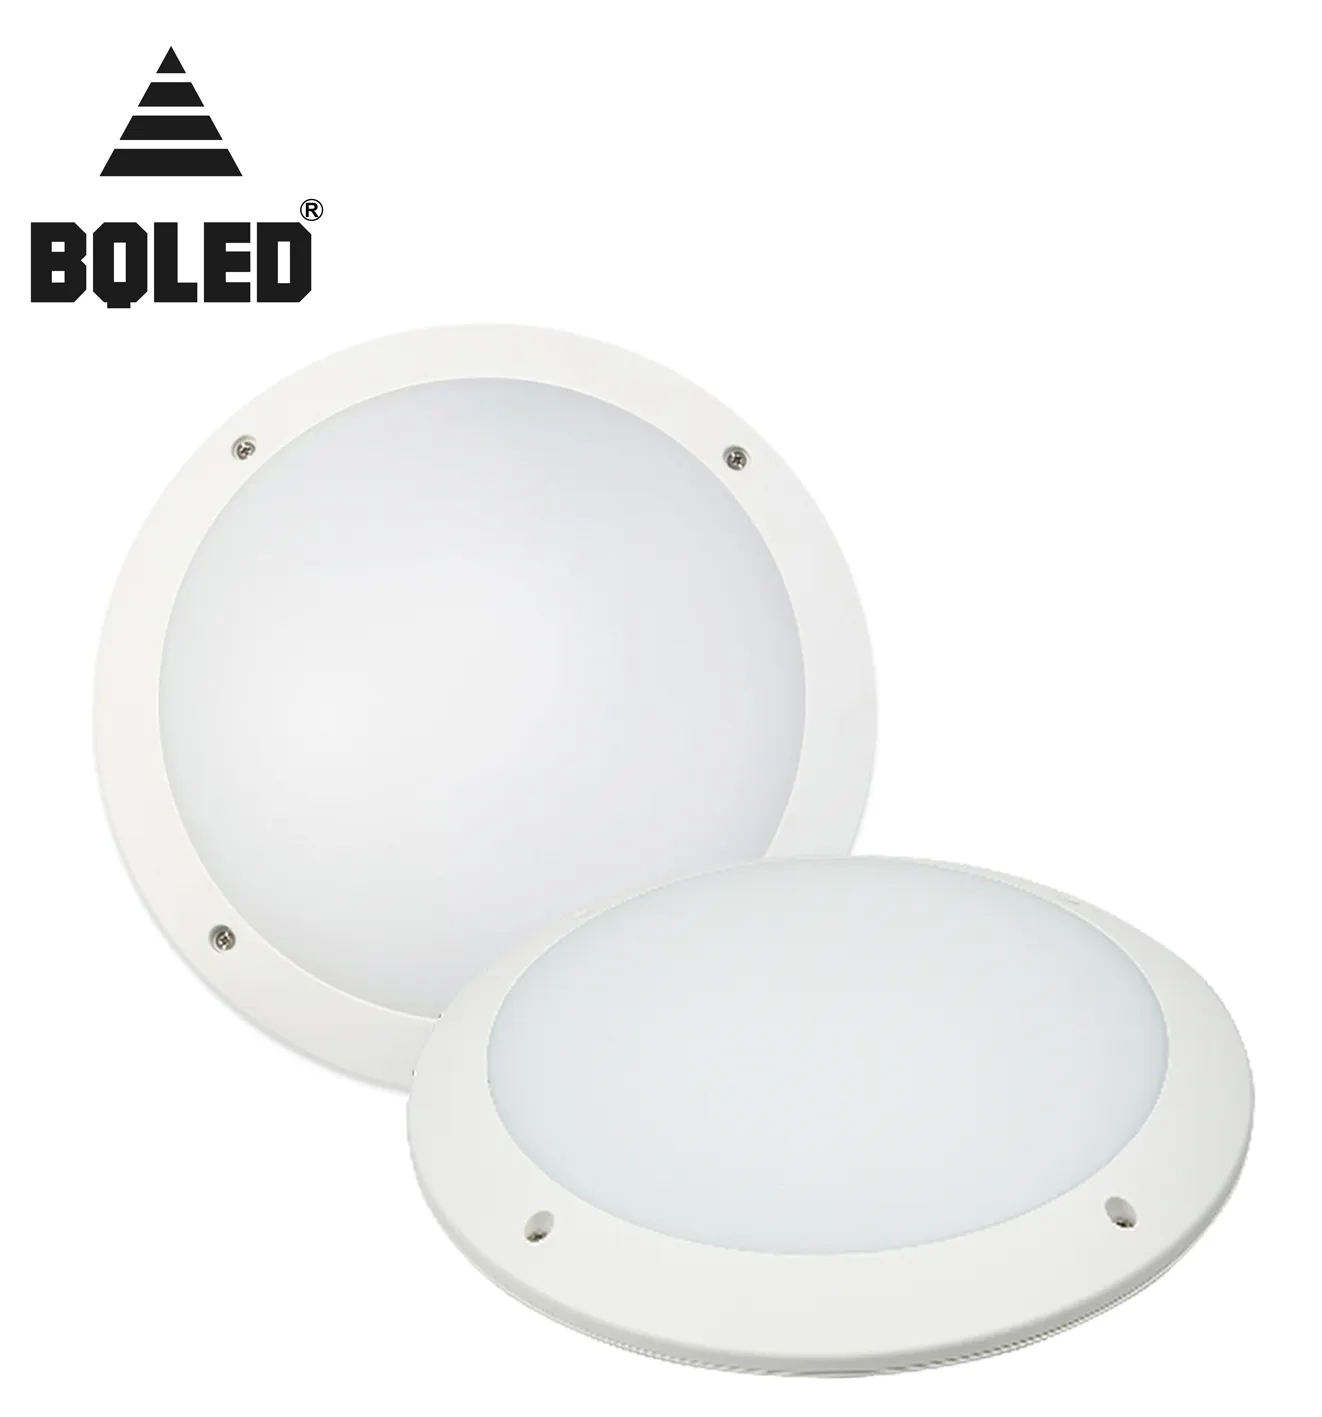 Bqled Nieuwe Private Model Hot Verkoop Geschikt Voor Trappen Gang Toilet Hoge Helderheid 22W Plafondlamp